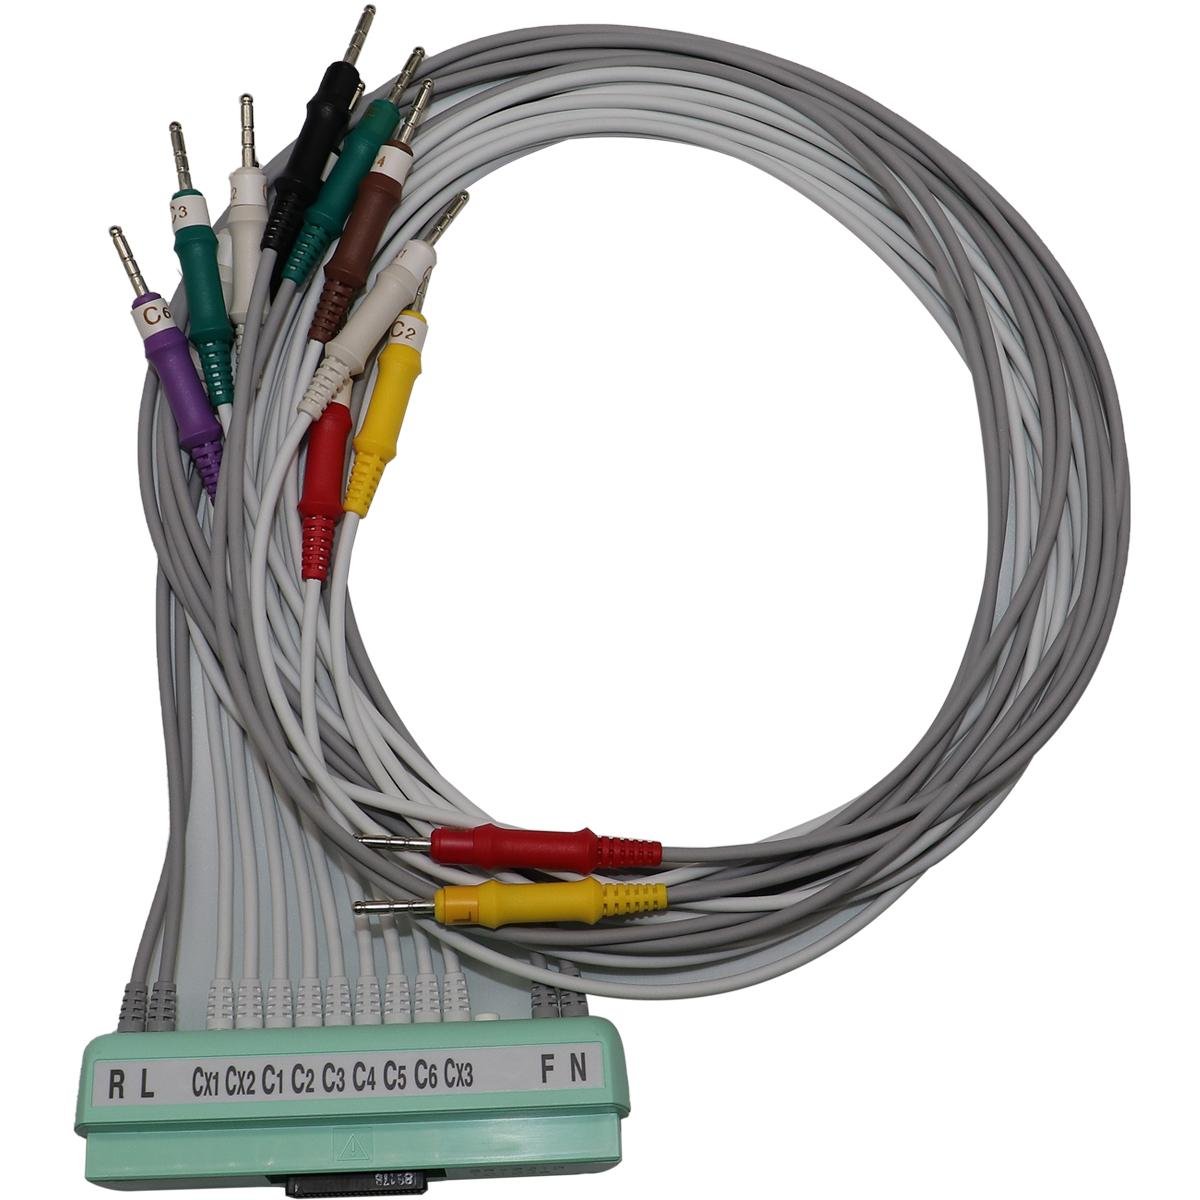 NIHOH KOHDEN ECG-1550P BR-921D K093L 10 leads ecg cable ecg cable 7 bin